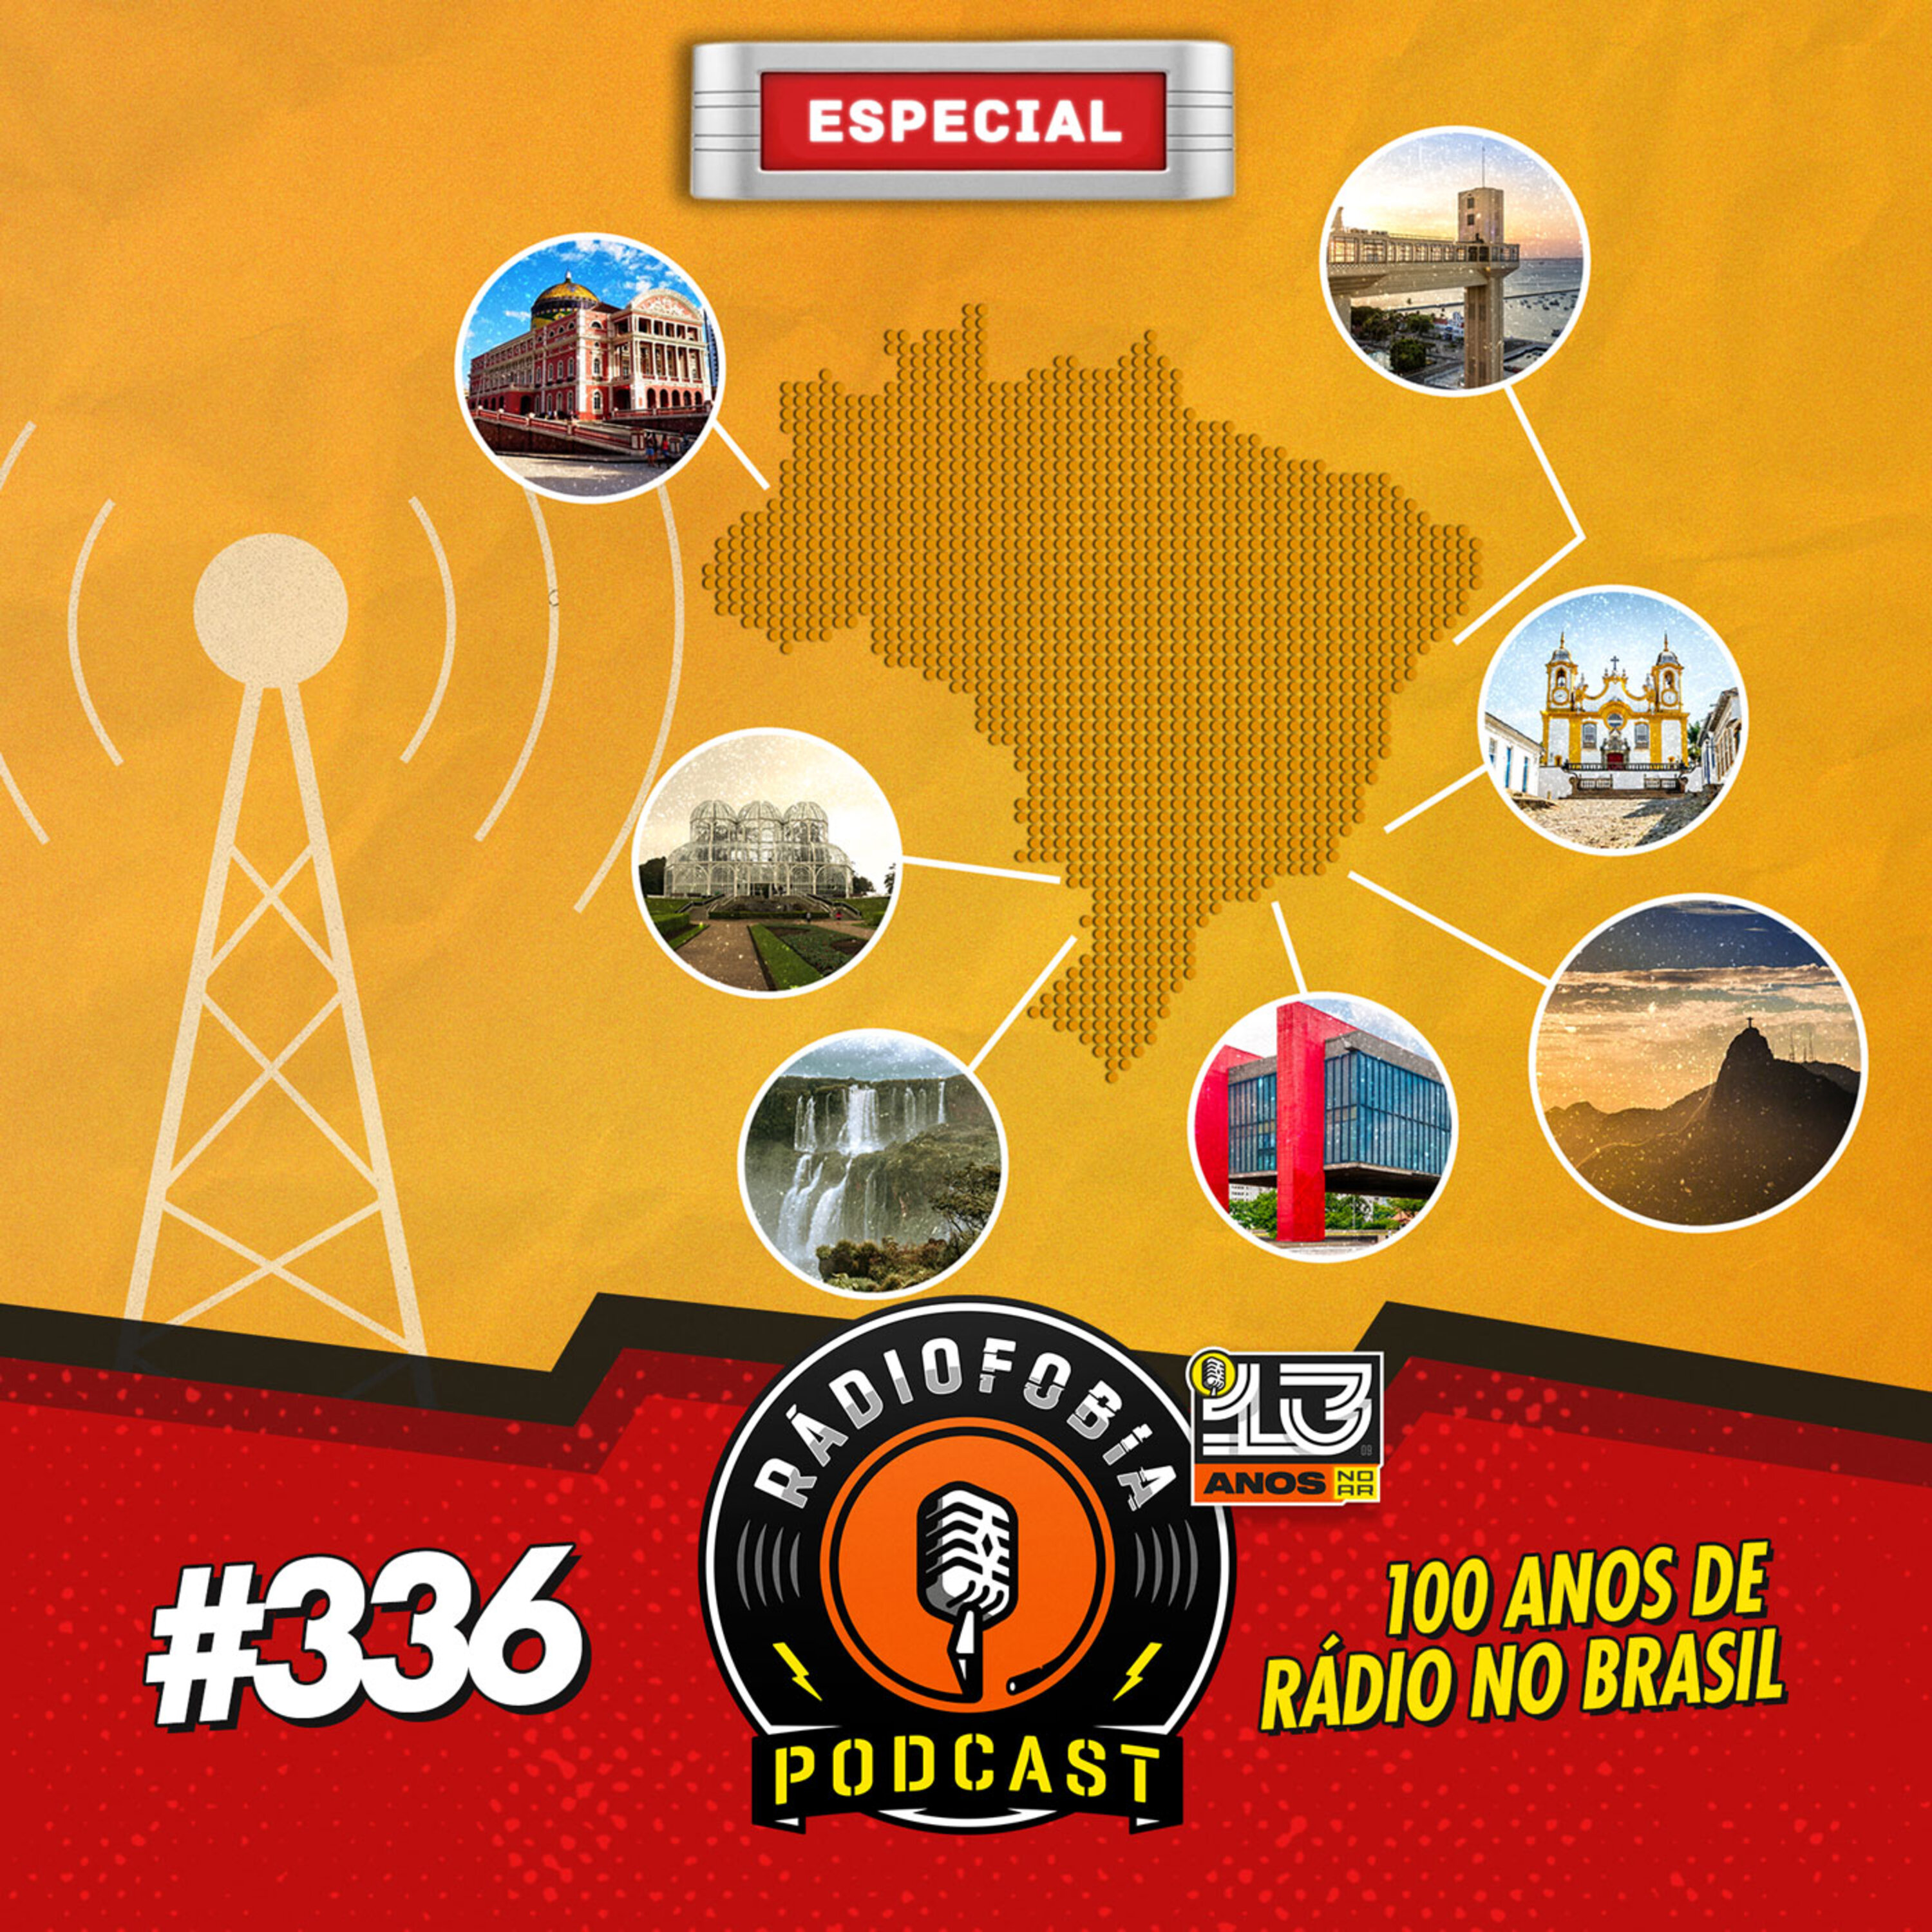 RADIOFOBIA 336 - ESPECIAL - 100 anos de rádio no Brasil